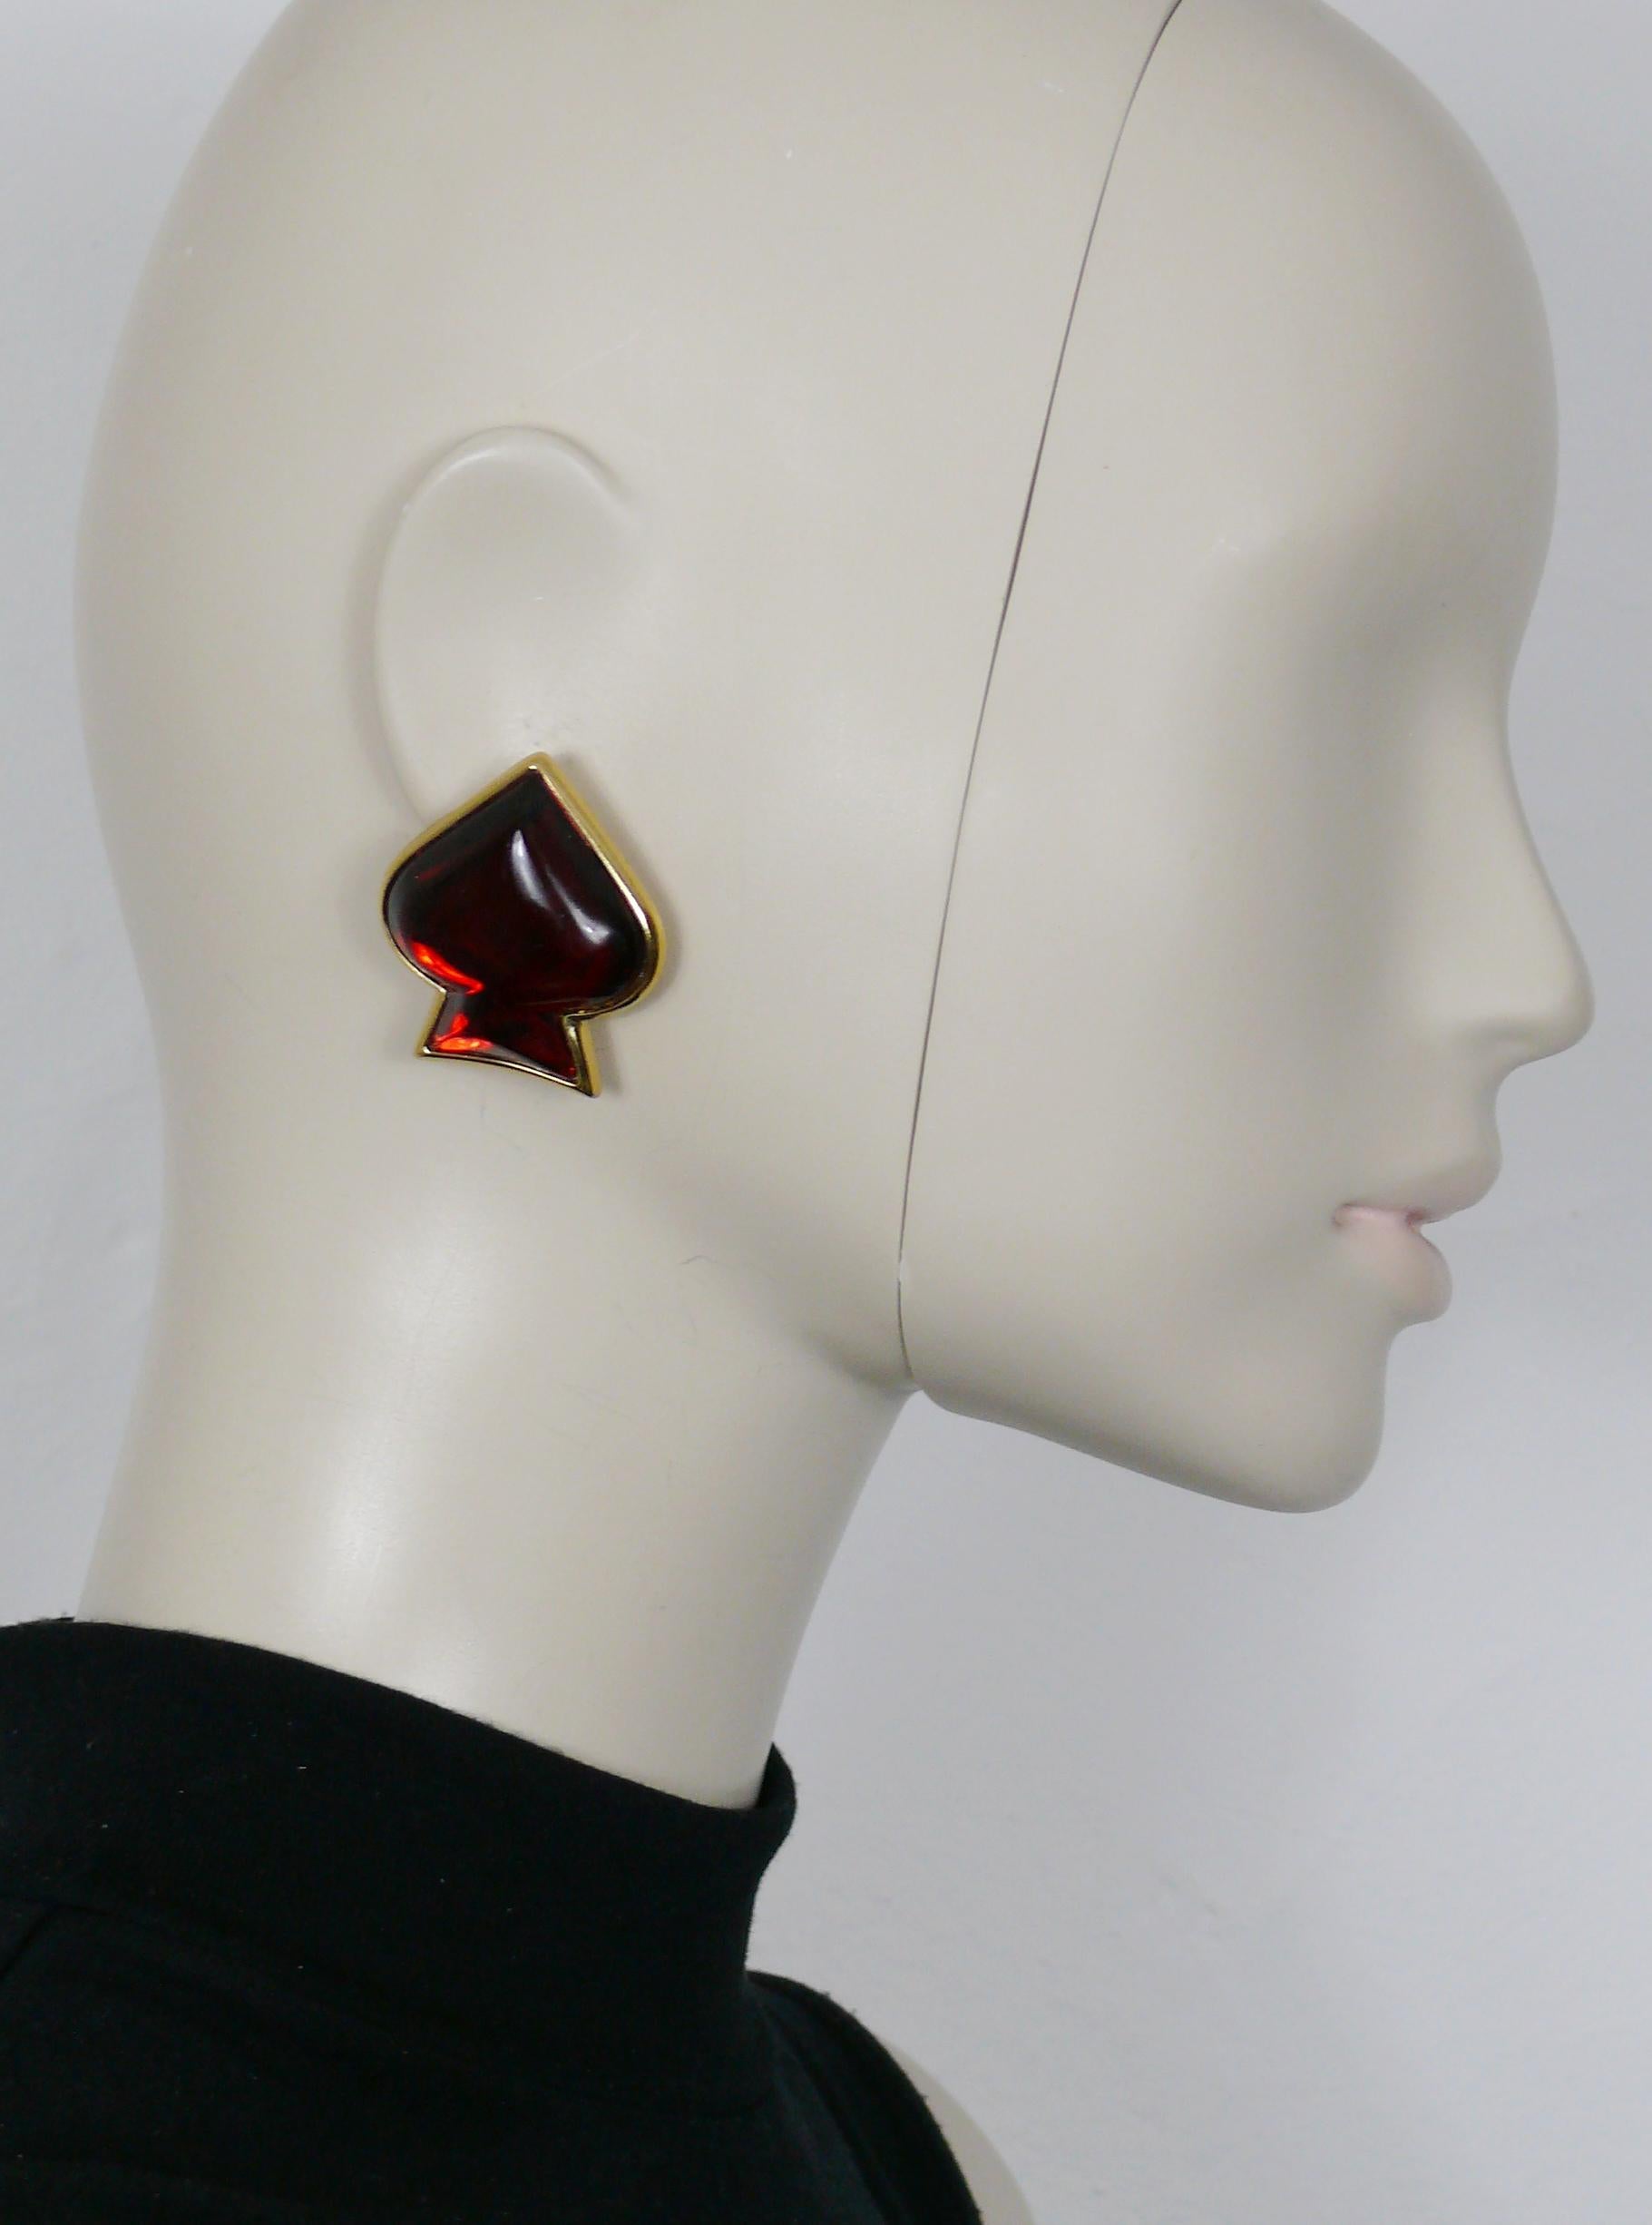 YVES SAINT LAURENT Vintage Spade Clip-Ohrringe mit roter Harzeinlage in goldfarbener Fassung.

Geprägtes YSL Made in France.

Ungefähre Maße: Höhe ca. 4 cm (1,57 Zoll) / max. Breite ca. 3,5 cm (1,38 Zoll).

Gewicht pro Ohrring: ca. 18